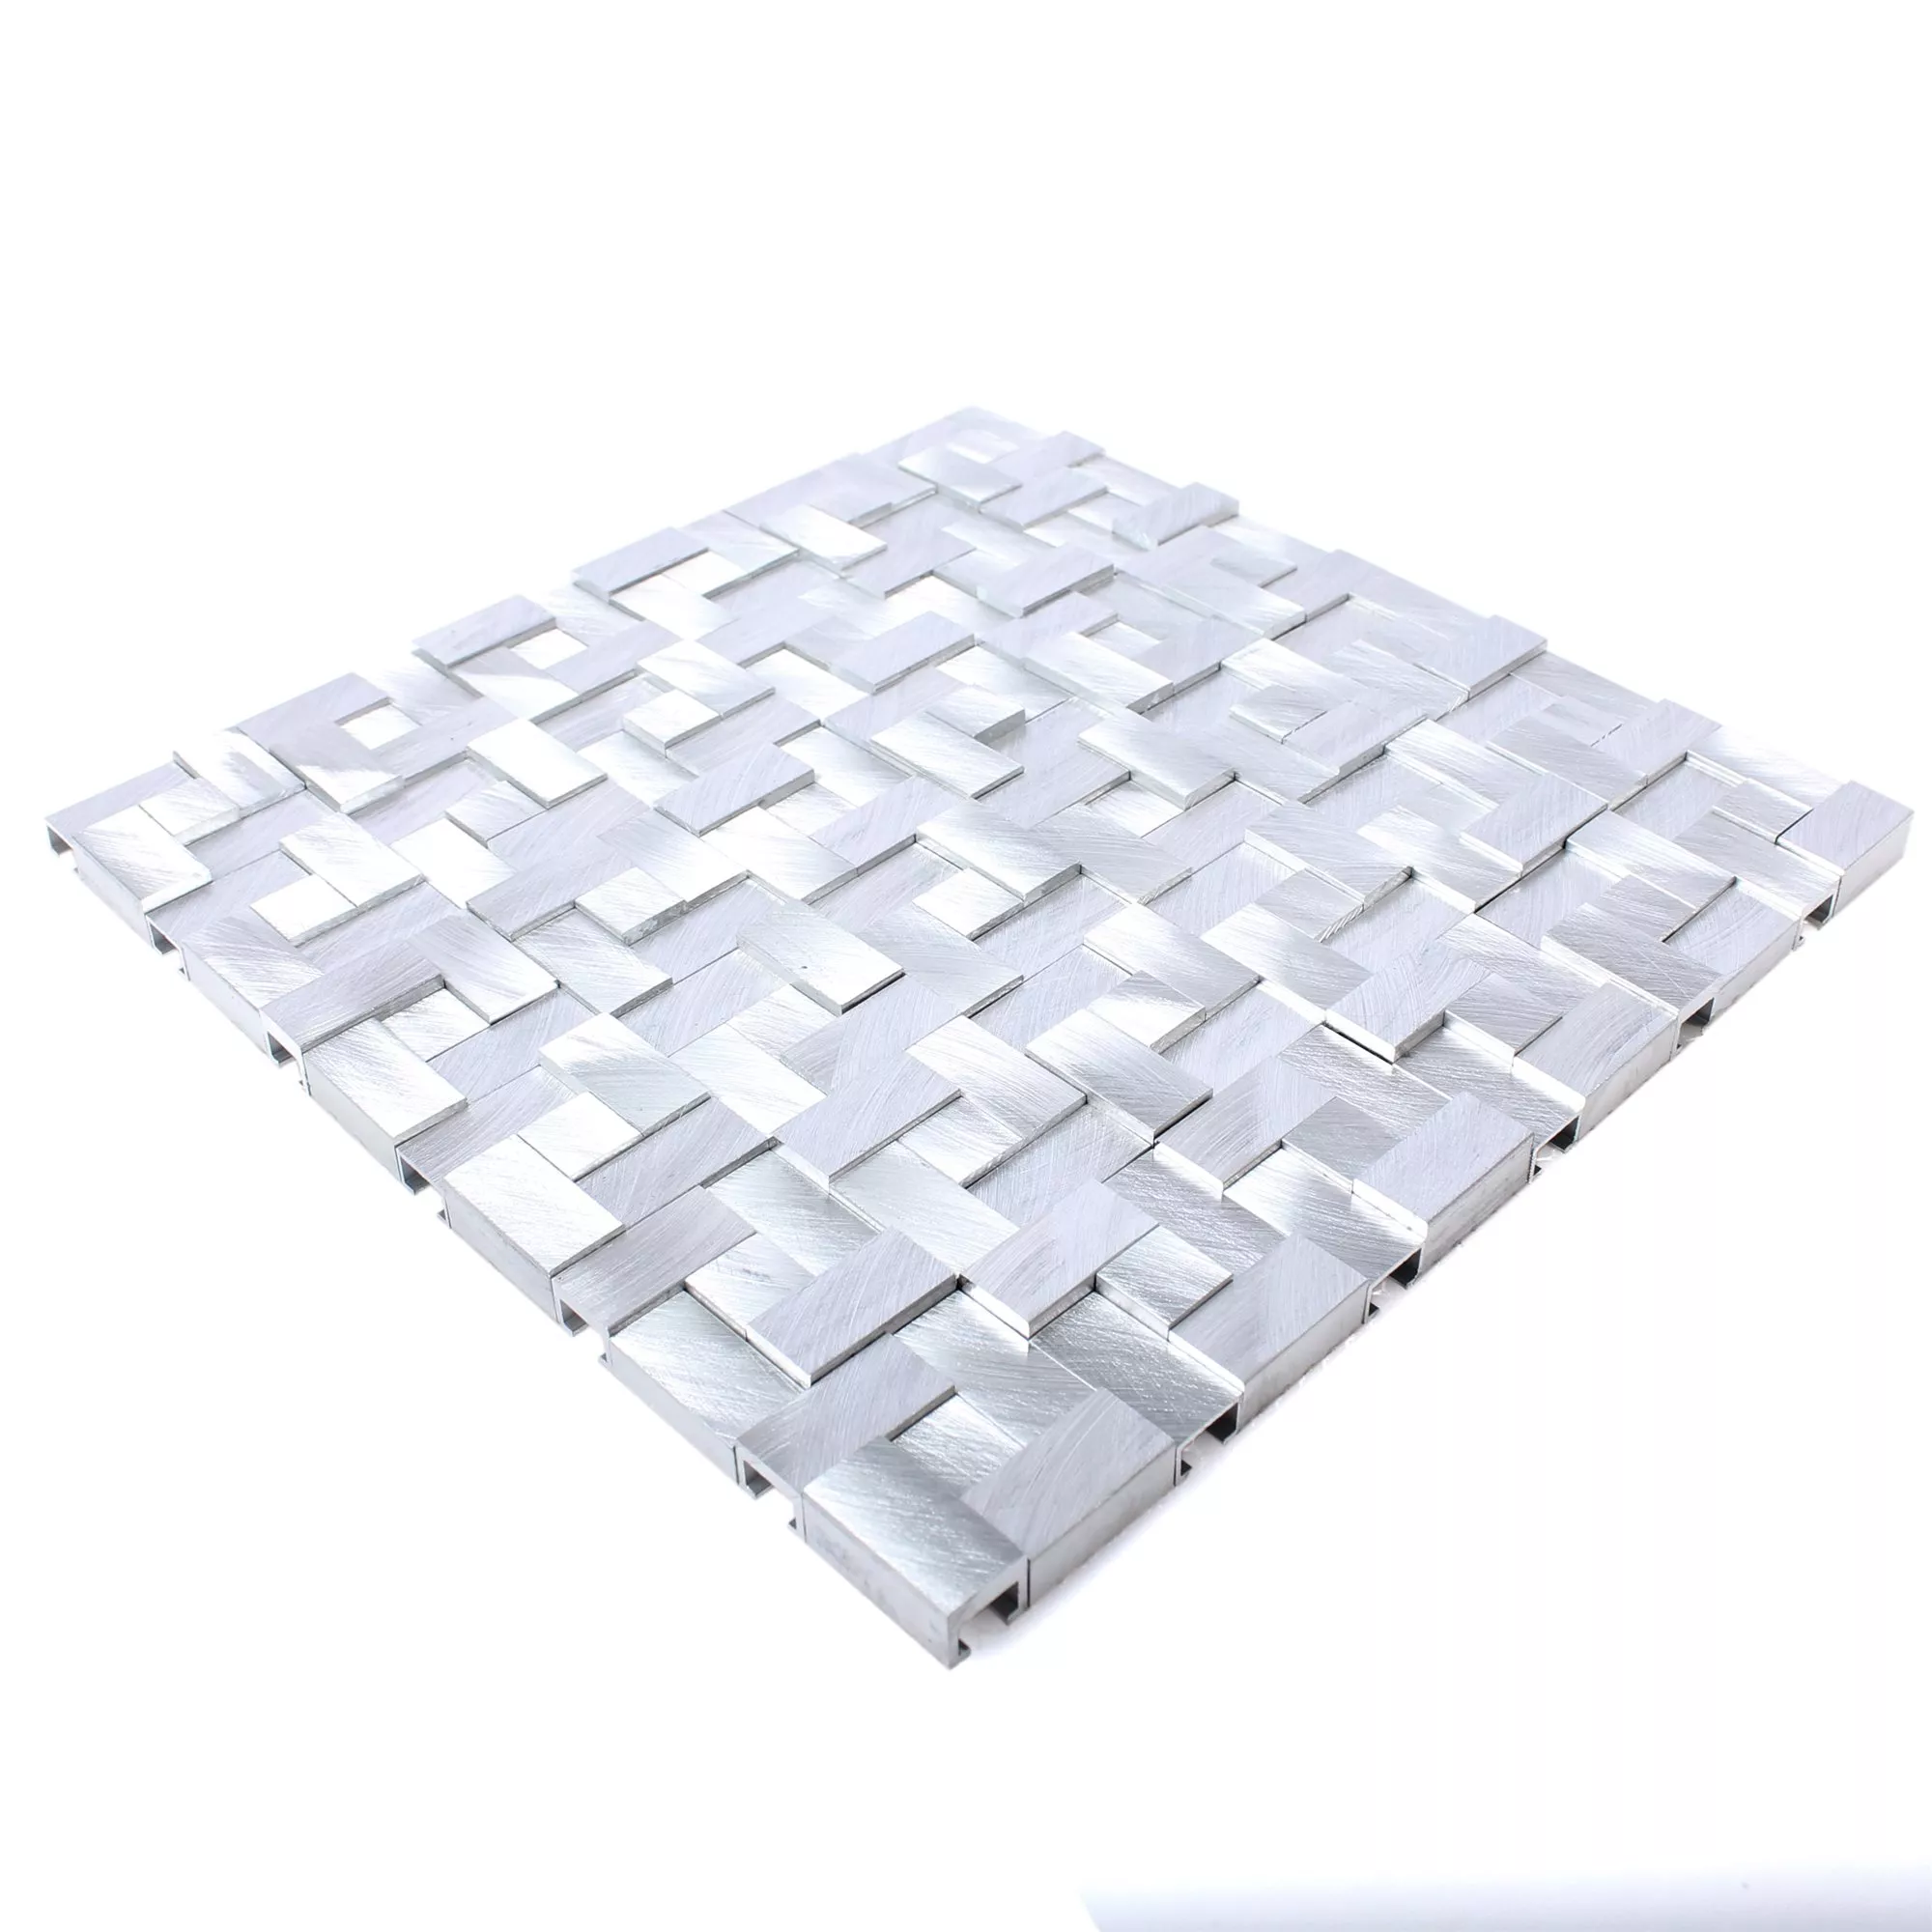 Sample Mosaic Tiles Aluminium Metal Elvis D Silver